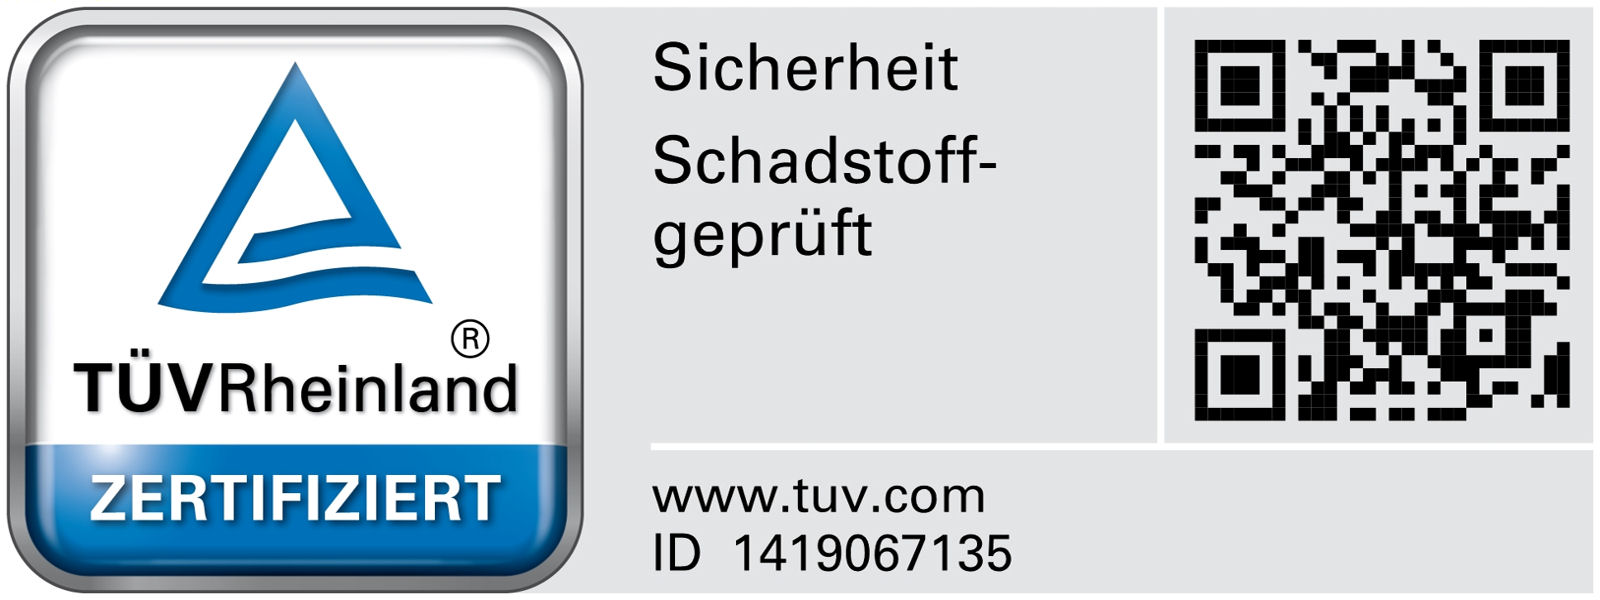 100 Bällebad Bälle 6cm Ø ORANGE 12 Tüv Rheinland zertifiziert 